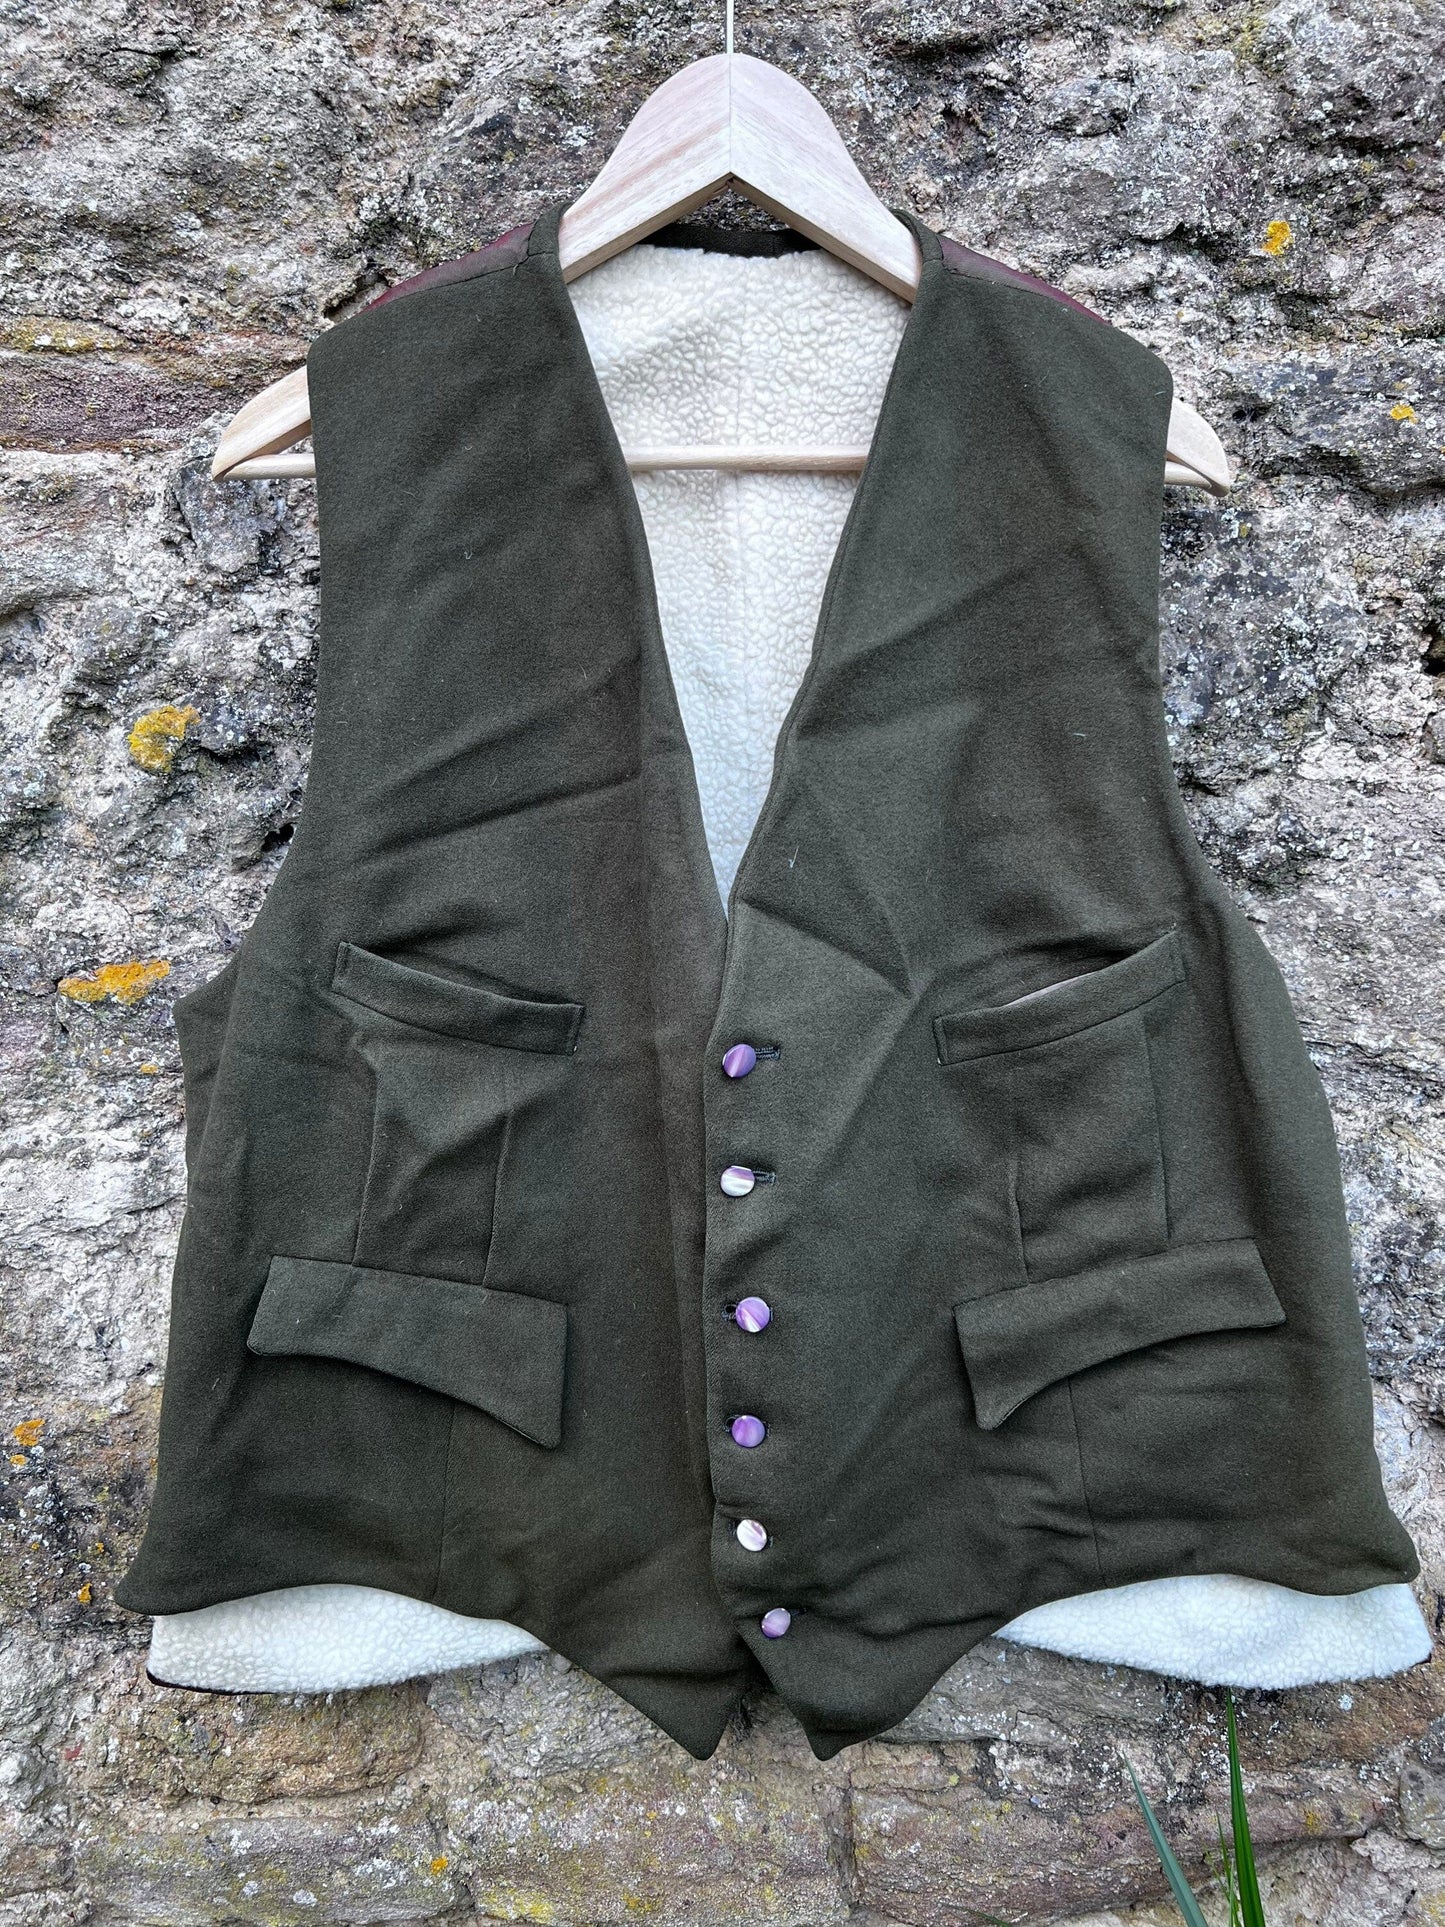 Mens 1950s 60s Vintage Waistcoat Vest Does Skin Forest Green Green Red Back, 6 Button 4 Pocket Fleece, Men’s Vintage Vest, Vintage Tweed,